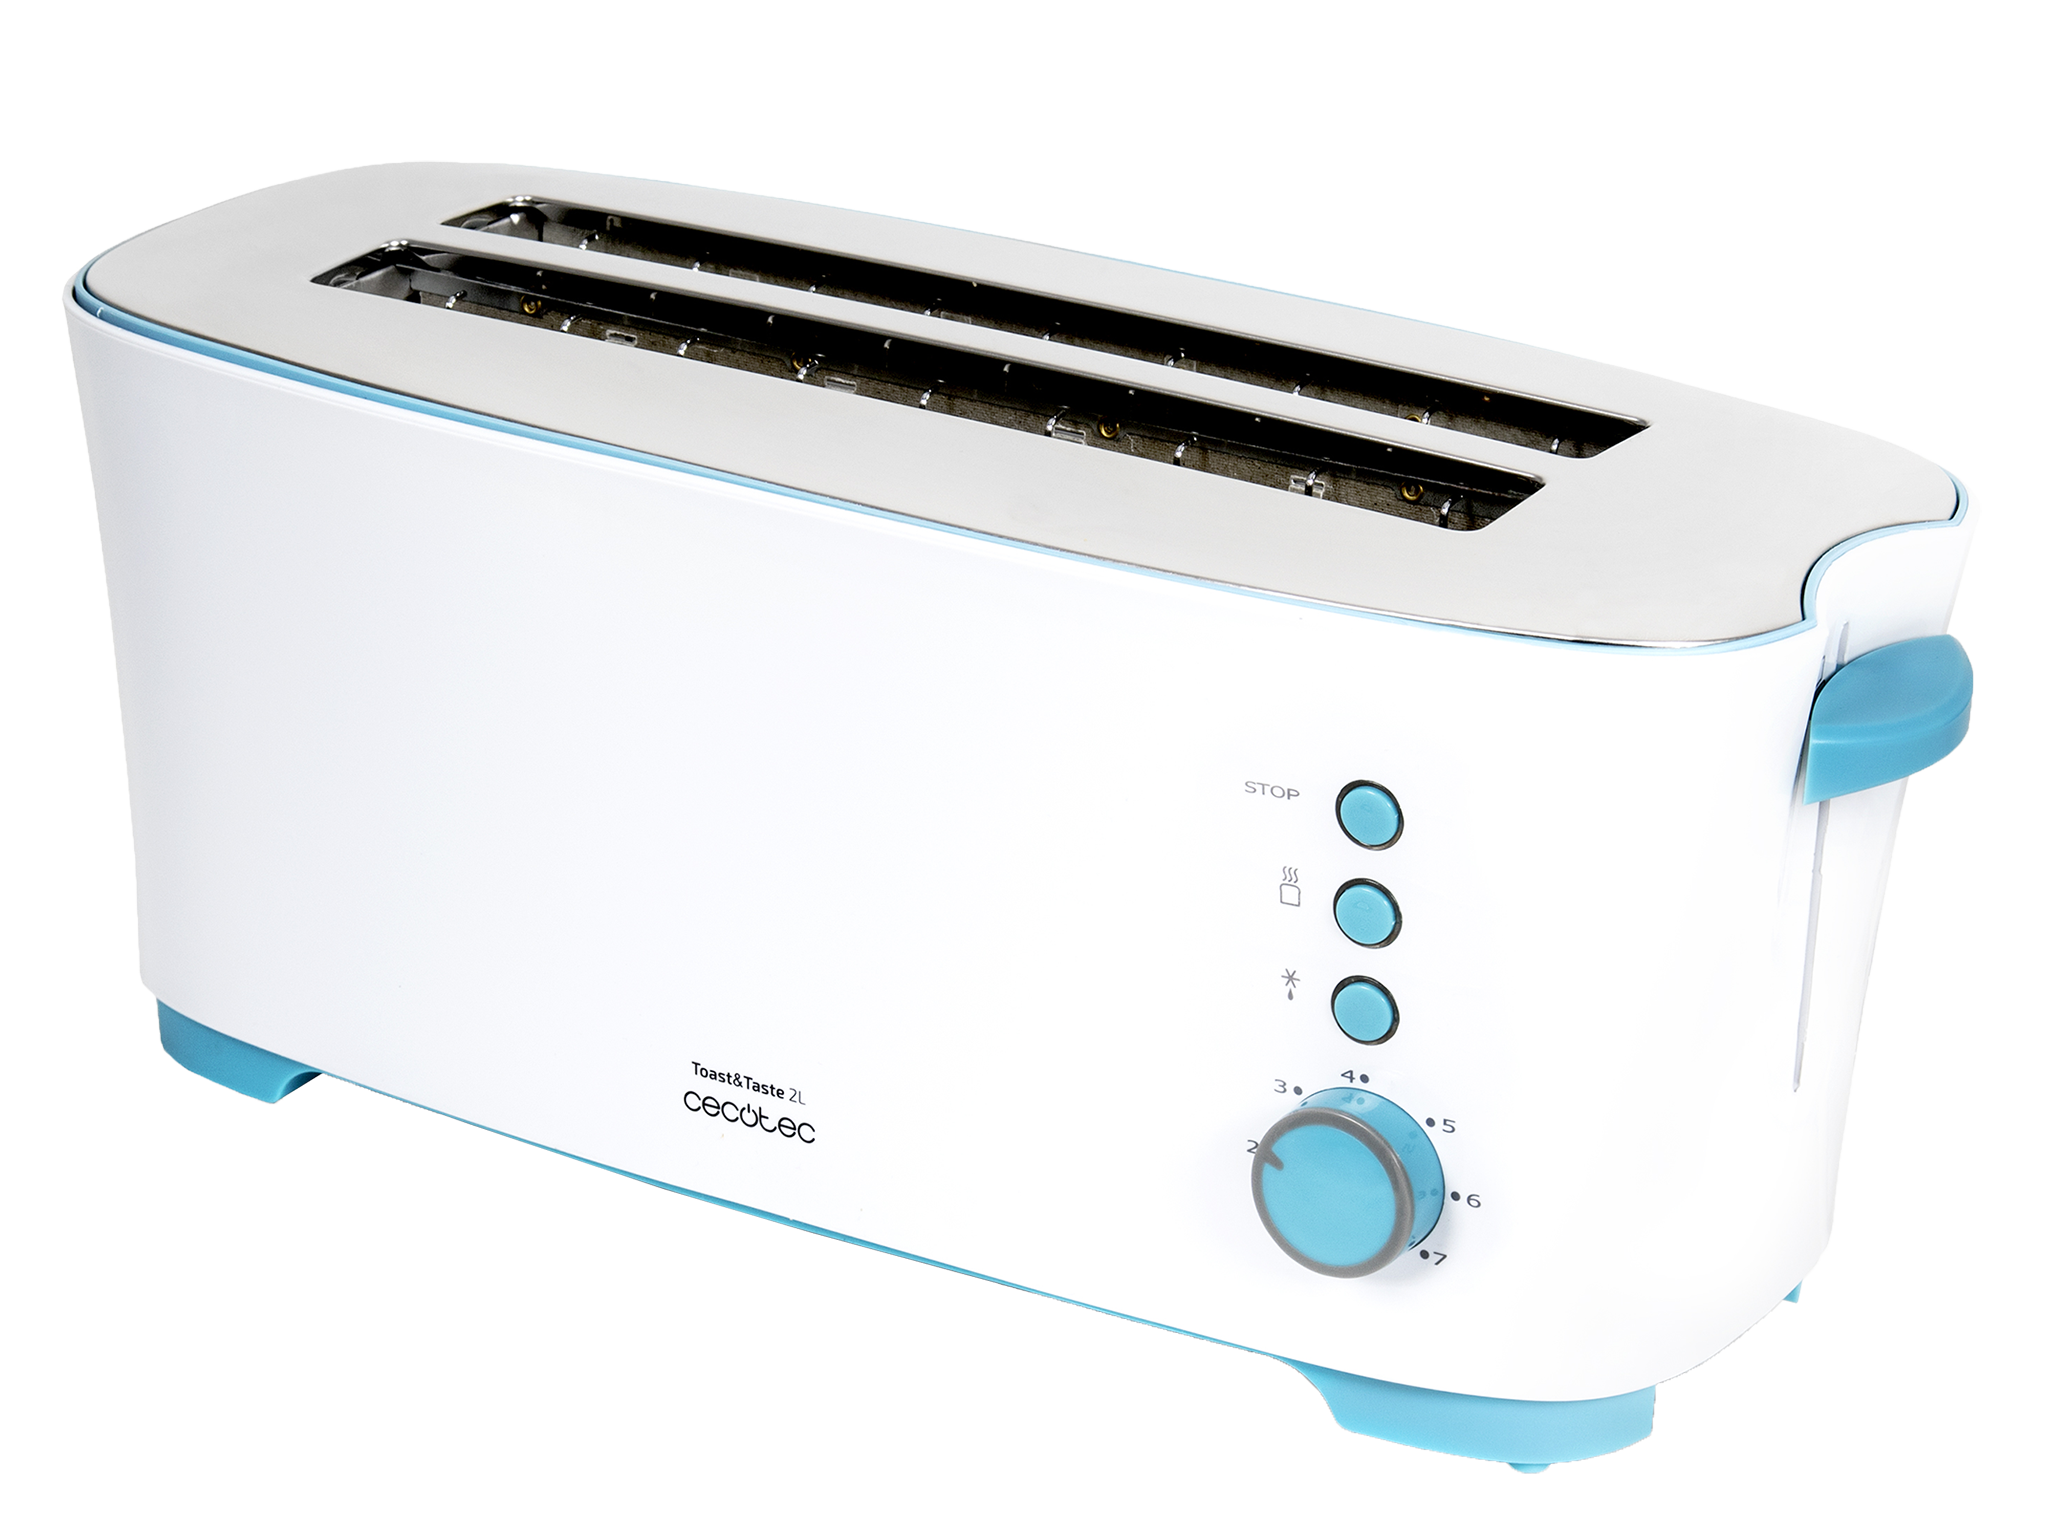 Toast&Taste 2L - Toaster, 7 Leistungsstufen, 4 Toastkapazitäten, 3 Funktionen (Toasten, Aufwärmen, Auftauen) Inklusive Brötchenhalter, Krümelfach, 1350 W